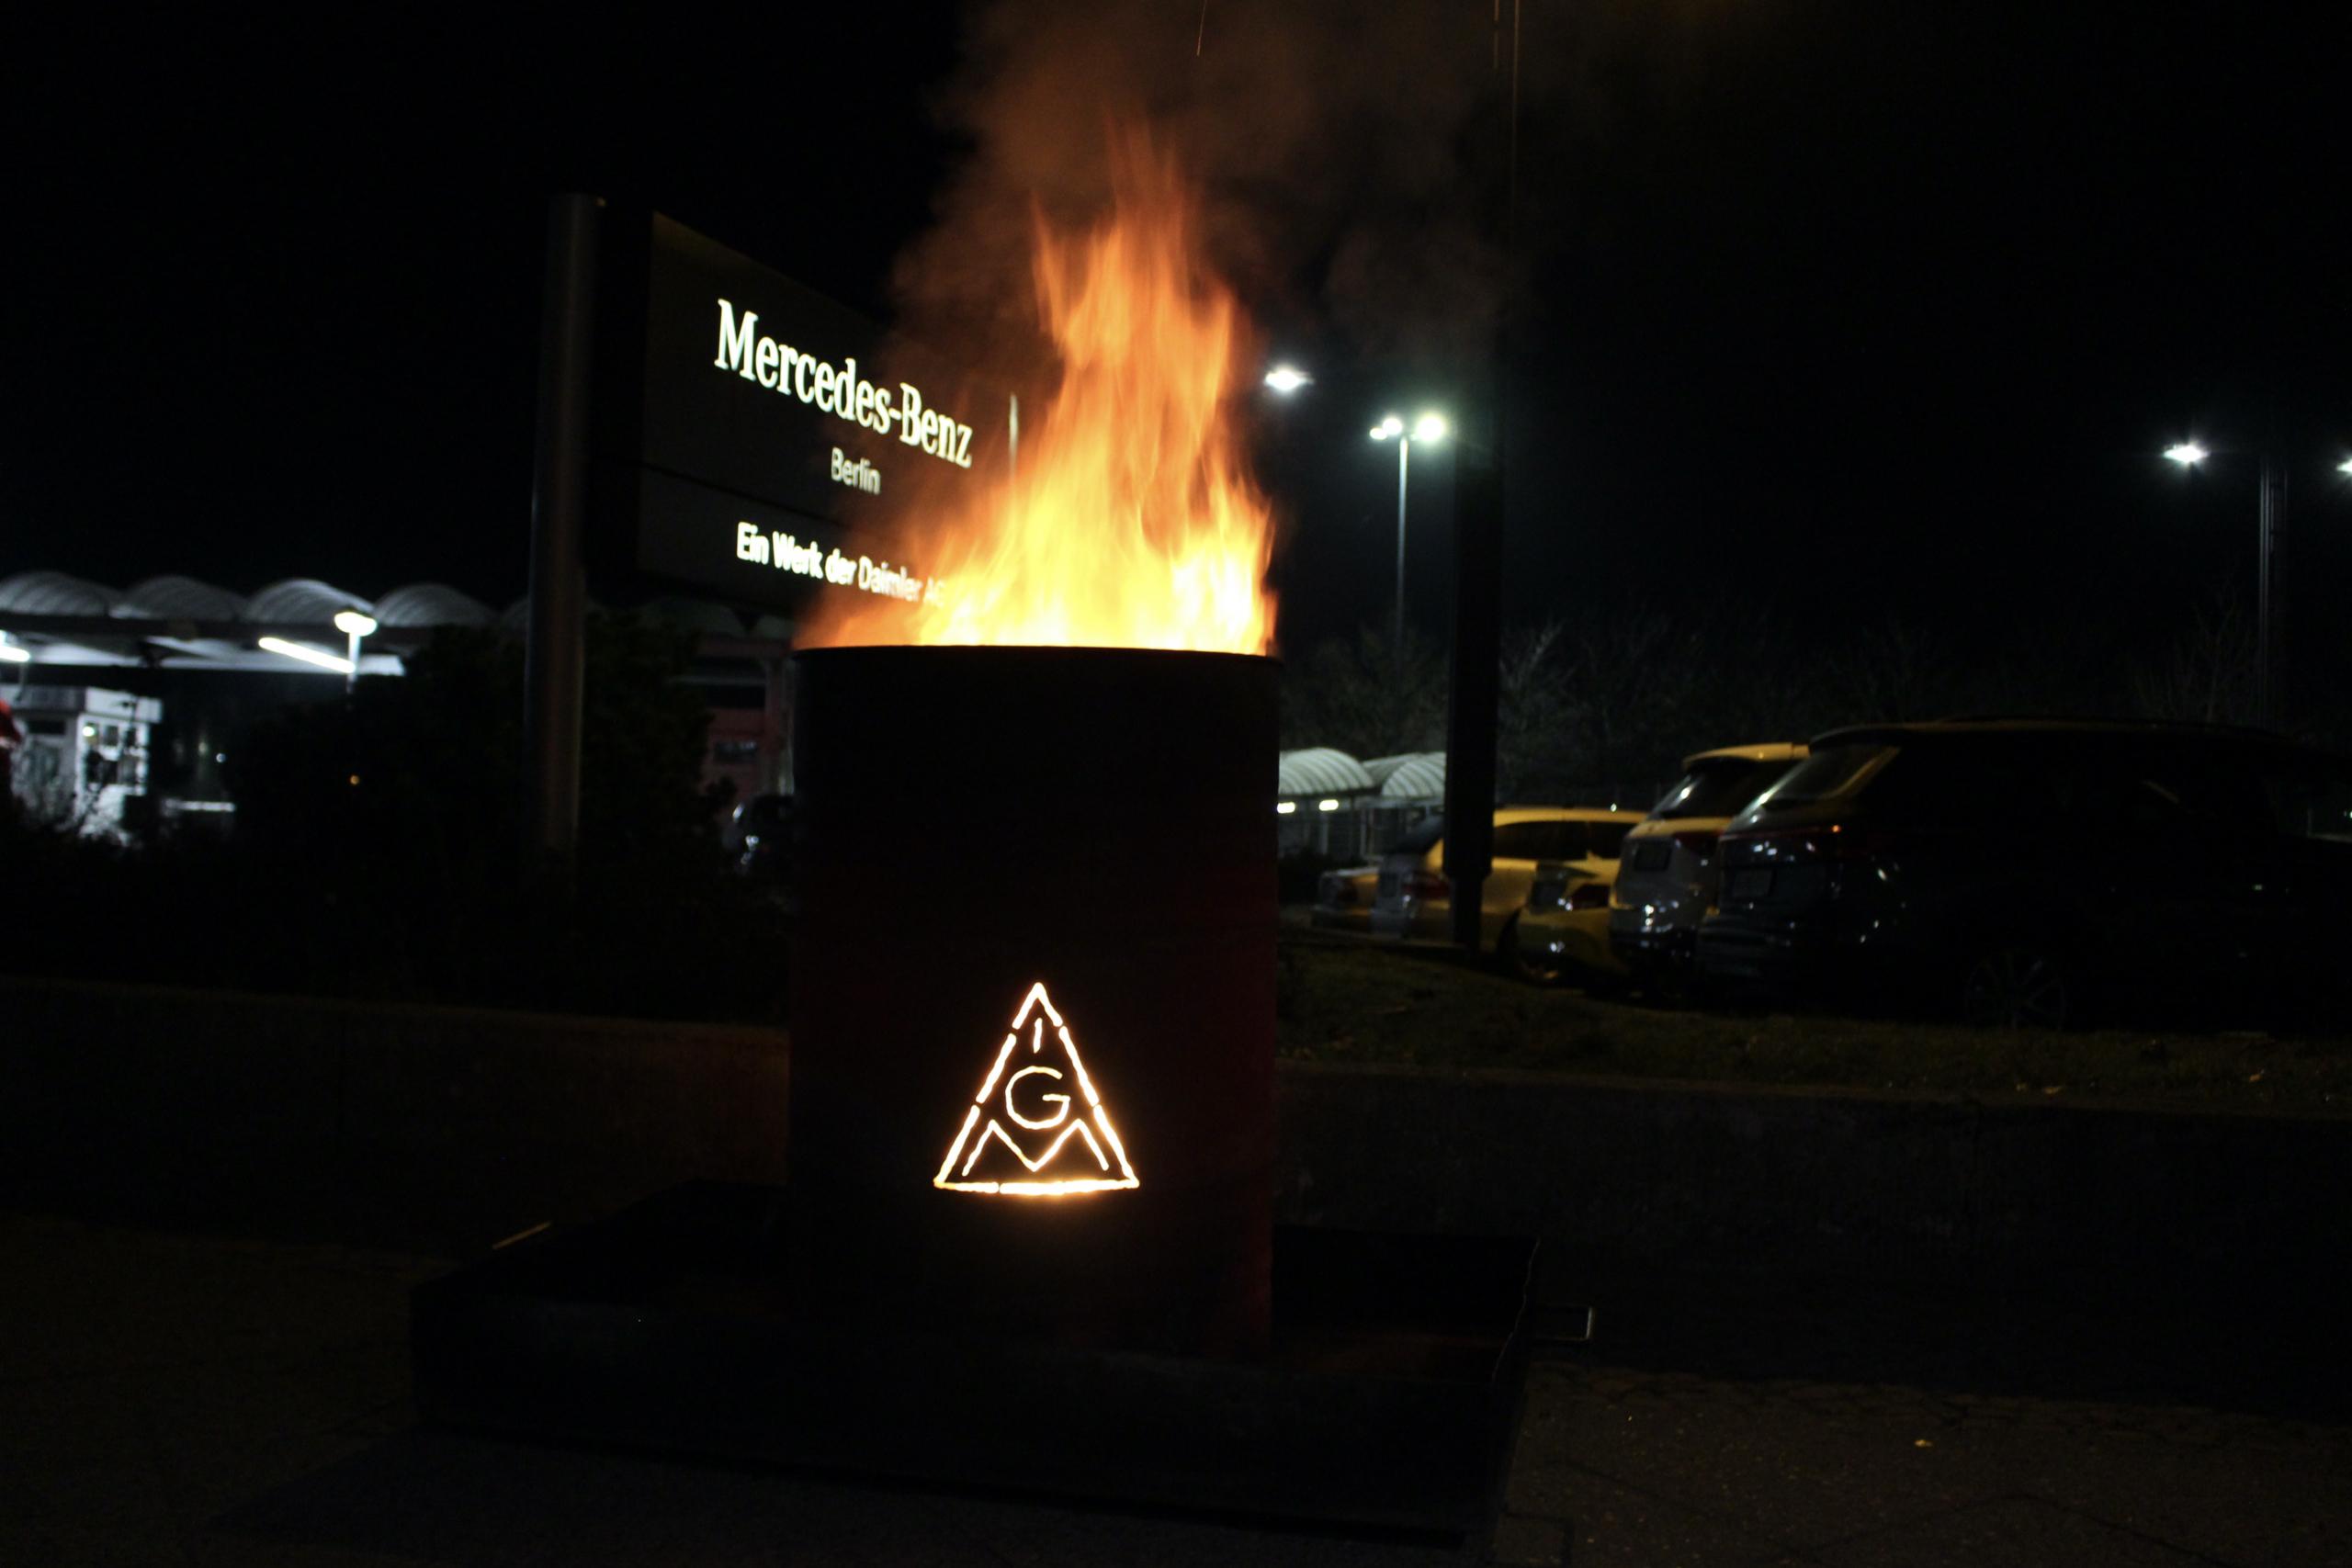 Streikaktion der IG-Metall vor den Werken in Marienfelde in der Nacht vom 01. auf den 02. März.